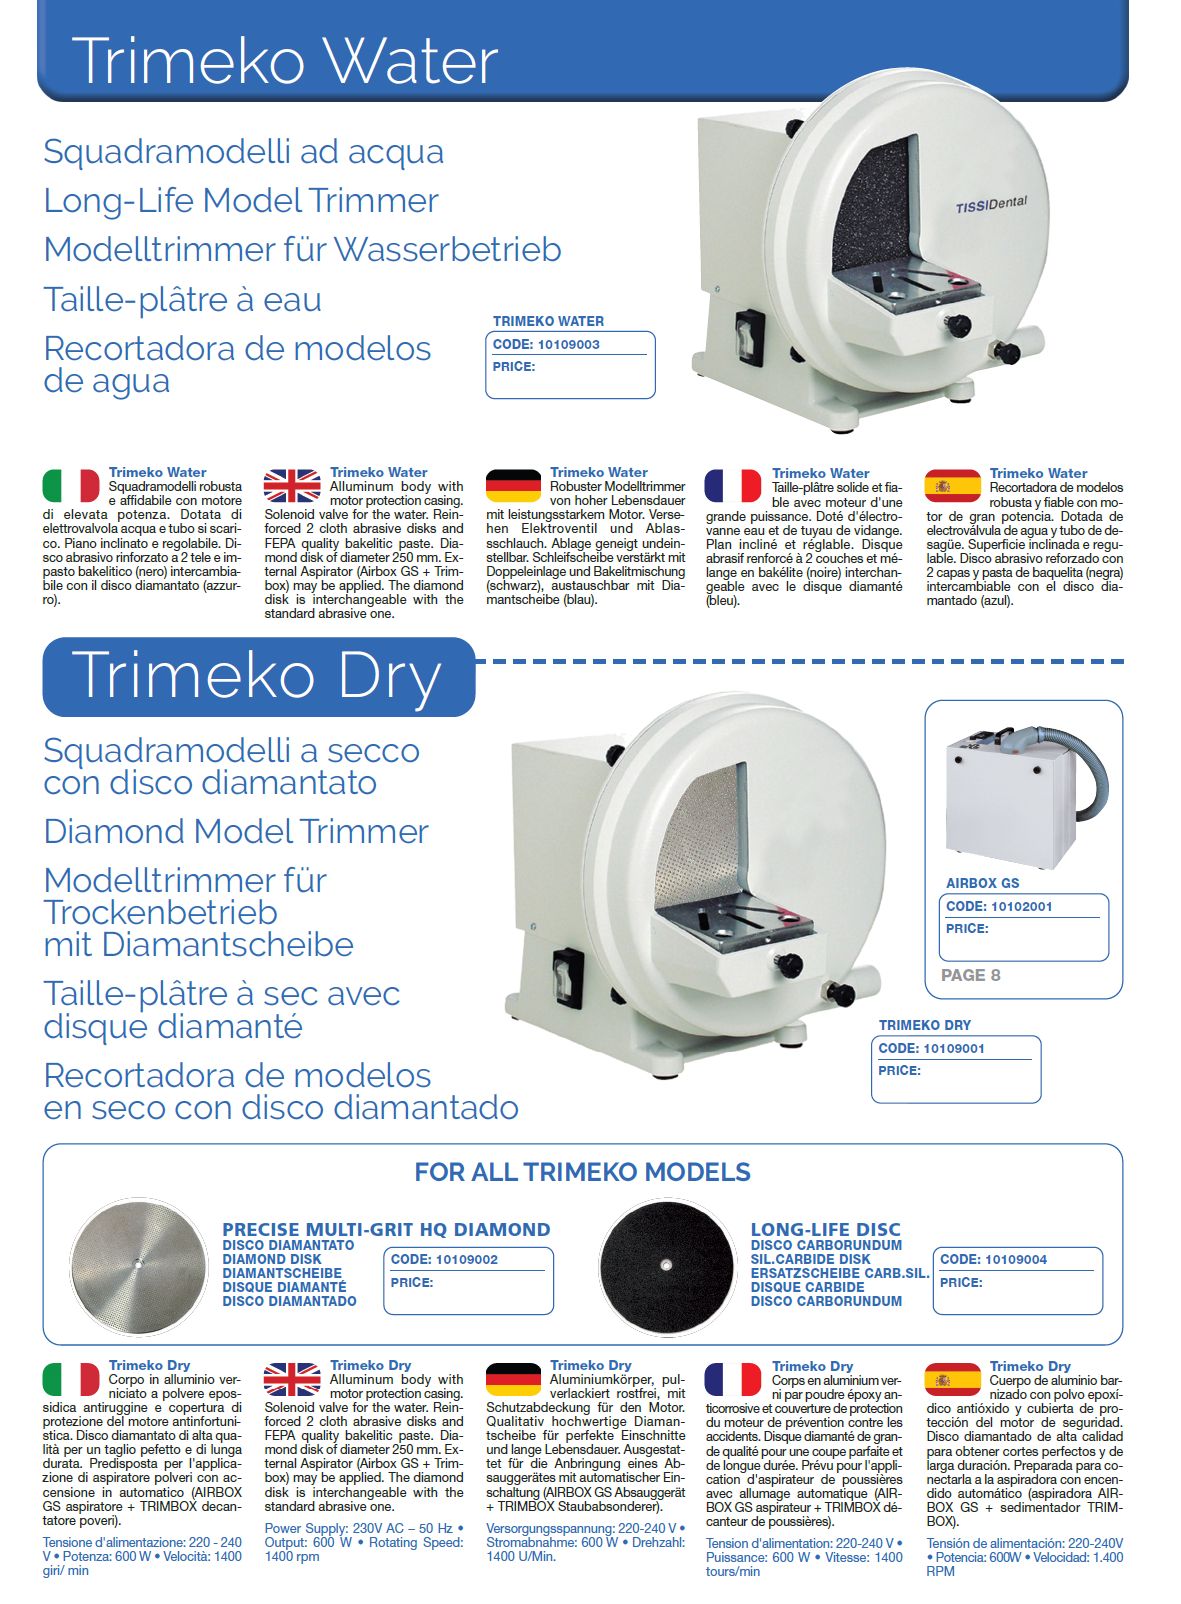 10109001 Trimeko Dry - Diamond Disk Dry Model Trimmer